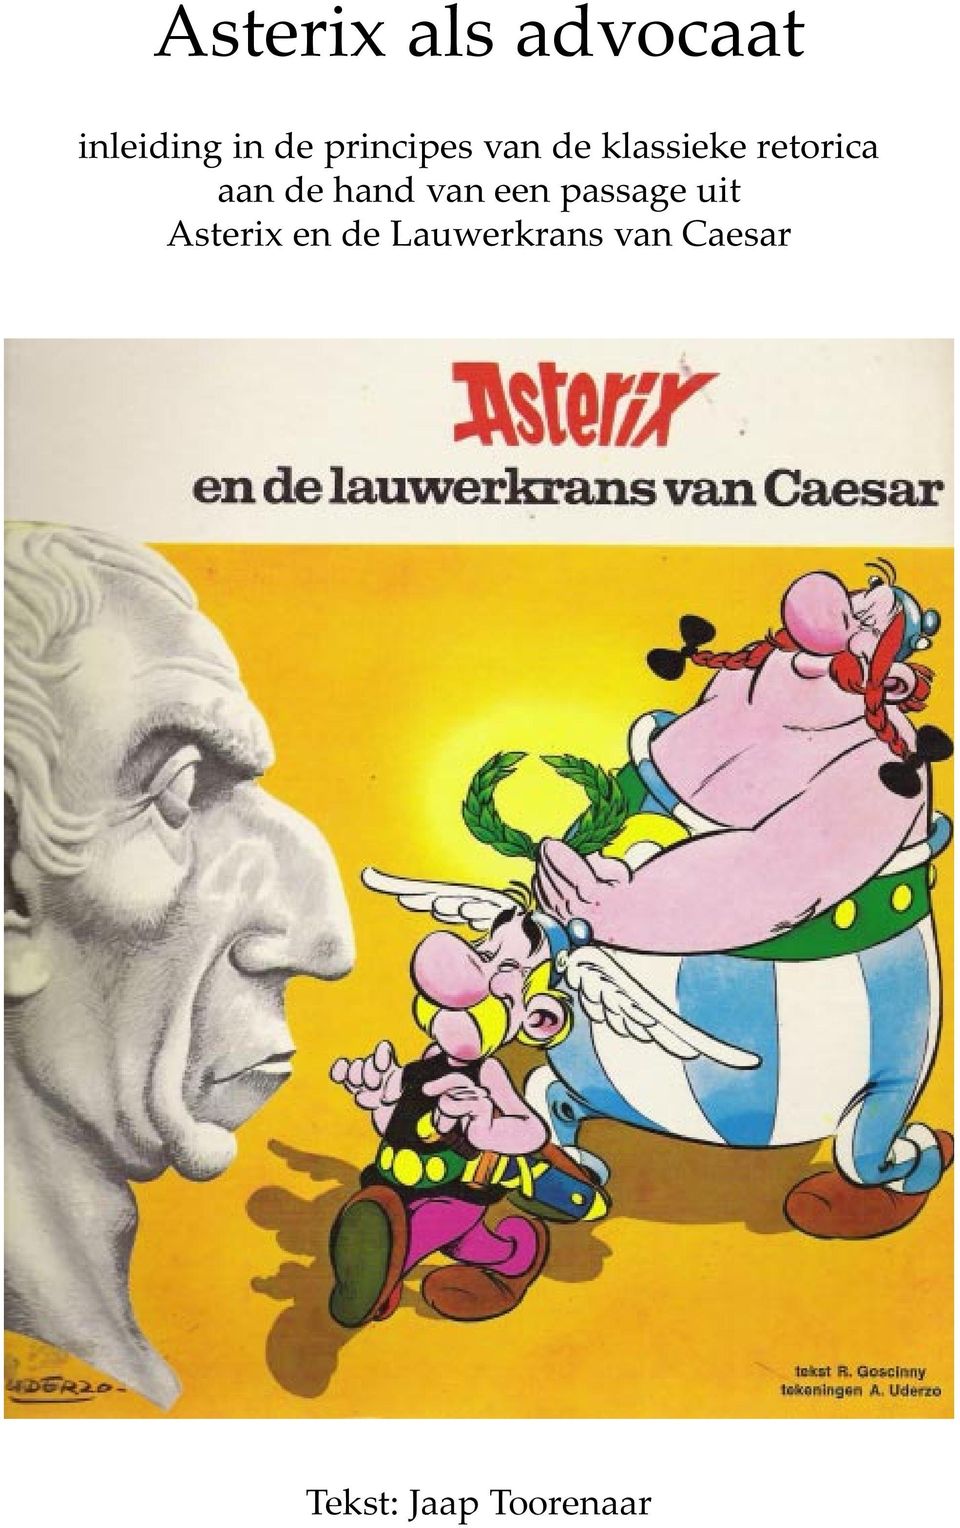 de hand van een passage uit Asterix en